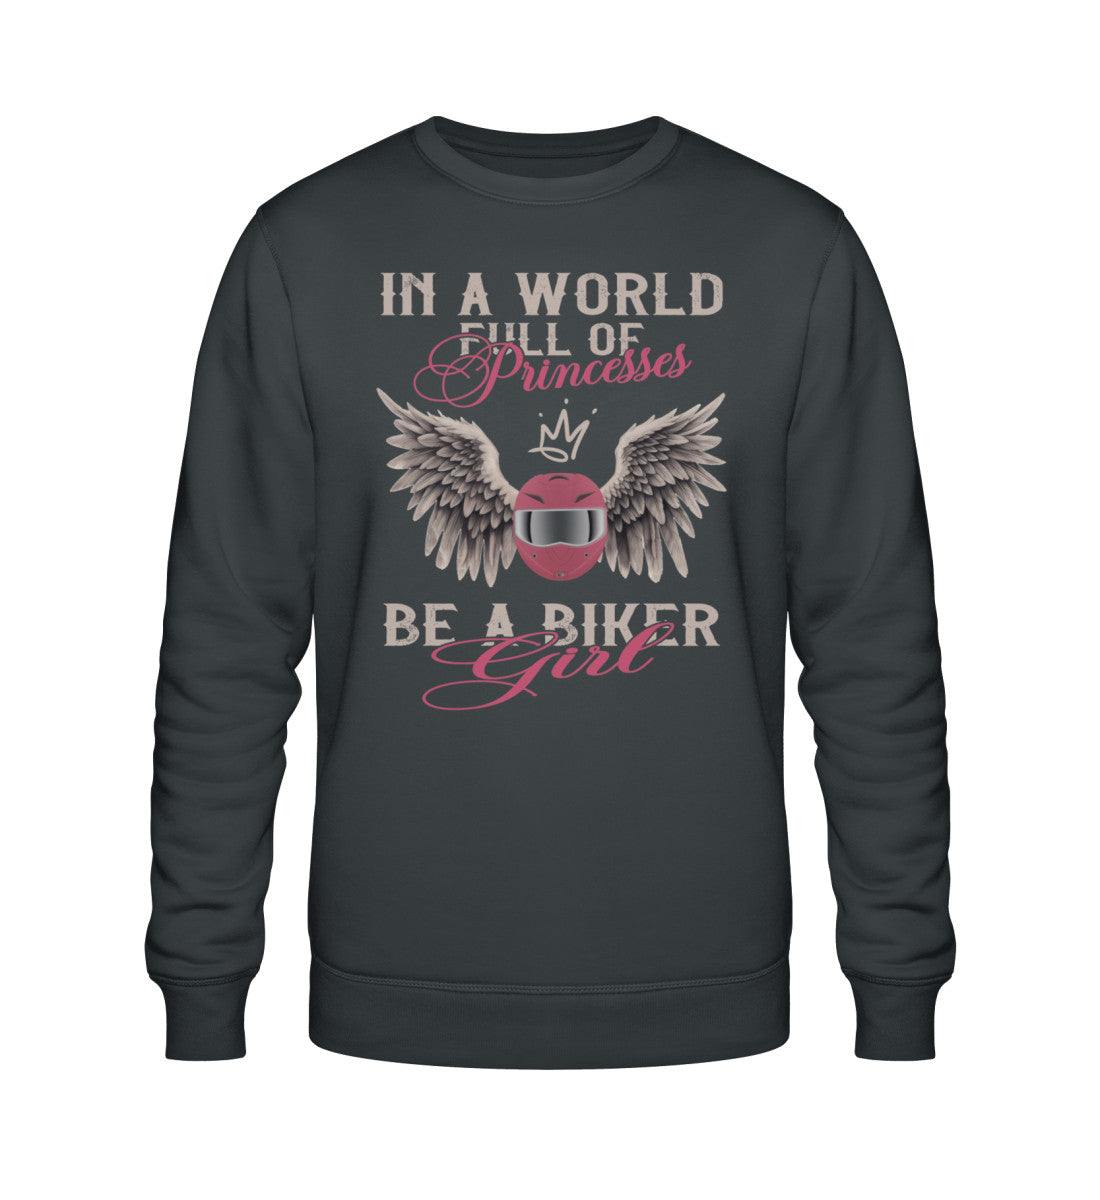 Ein Bikerin Sweatshirt für Motorradfahrerinnen von Wingbikers mit dem Aufdruck, In A World Full Of Princesses, Be A Biker Girl, in dunkelgrau. 